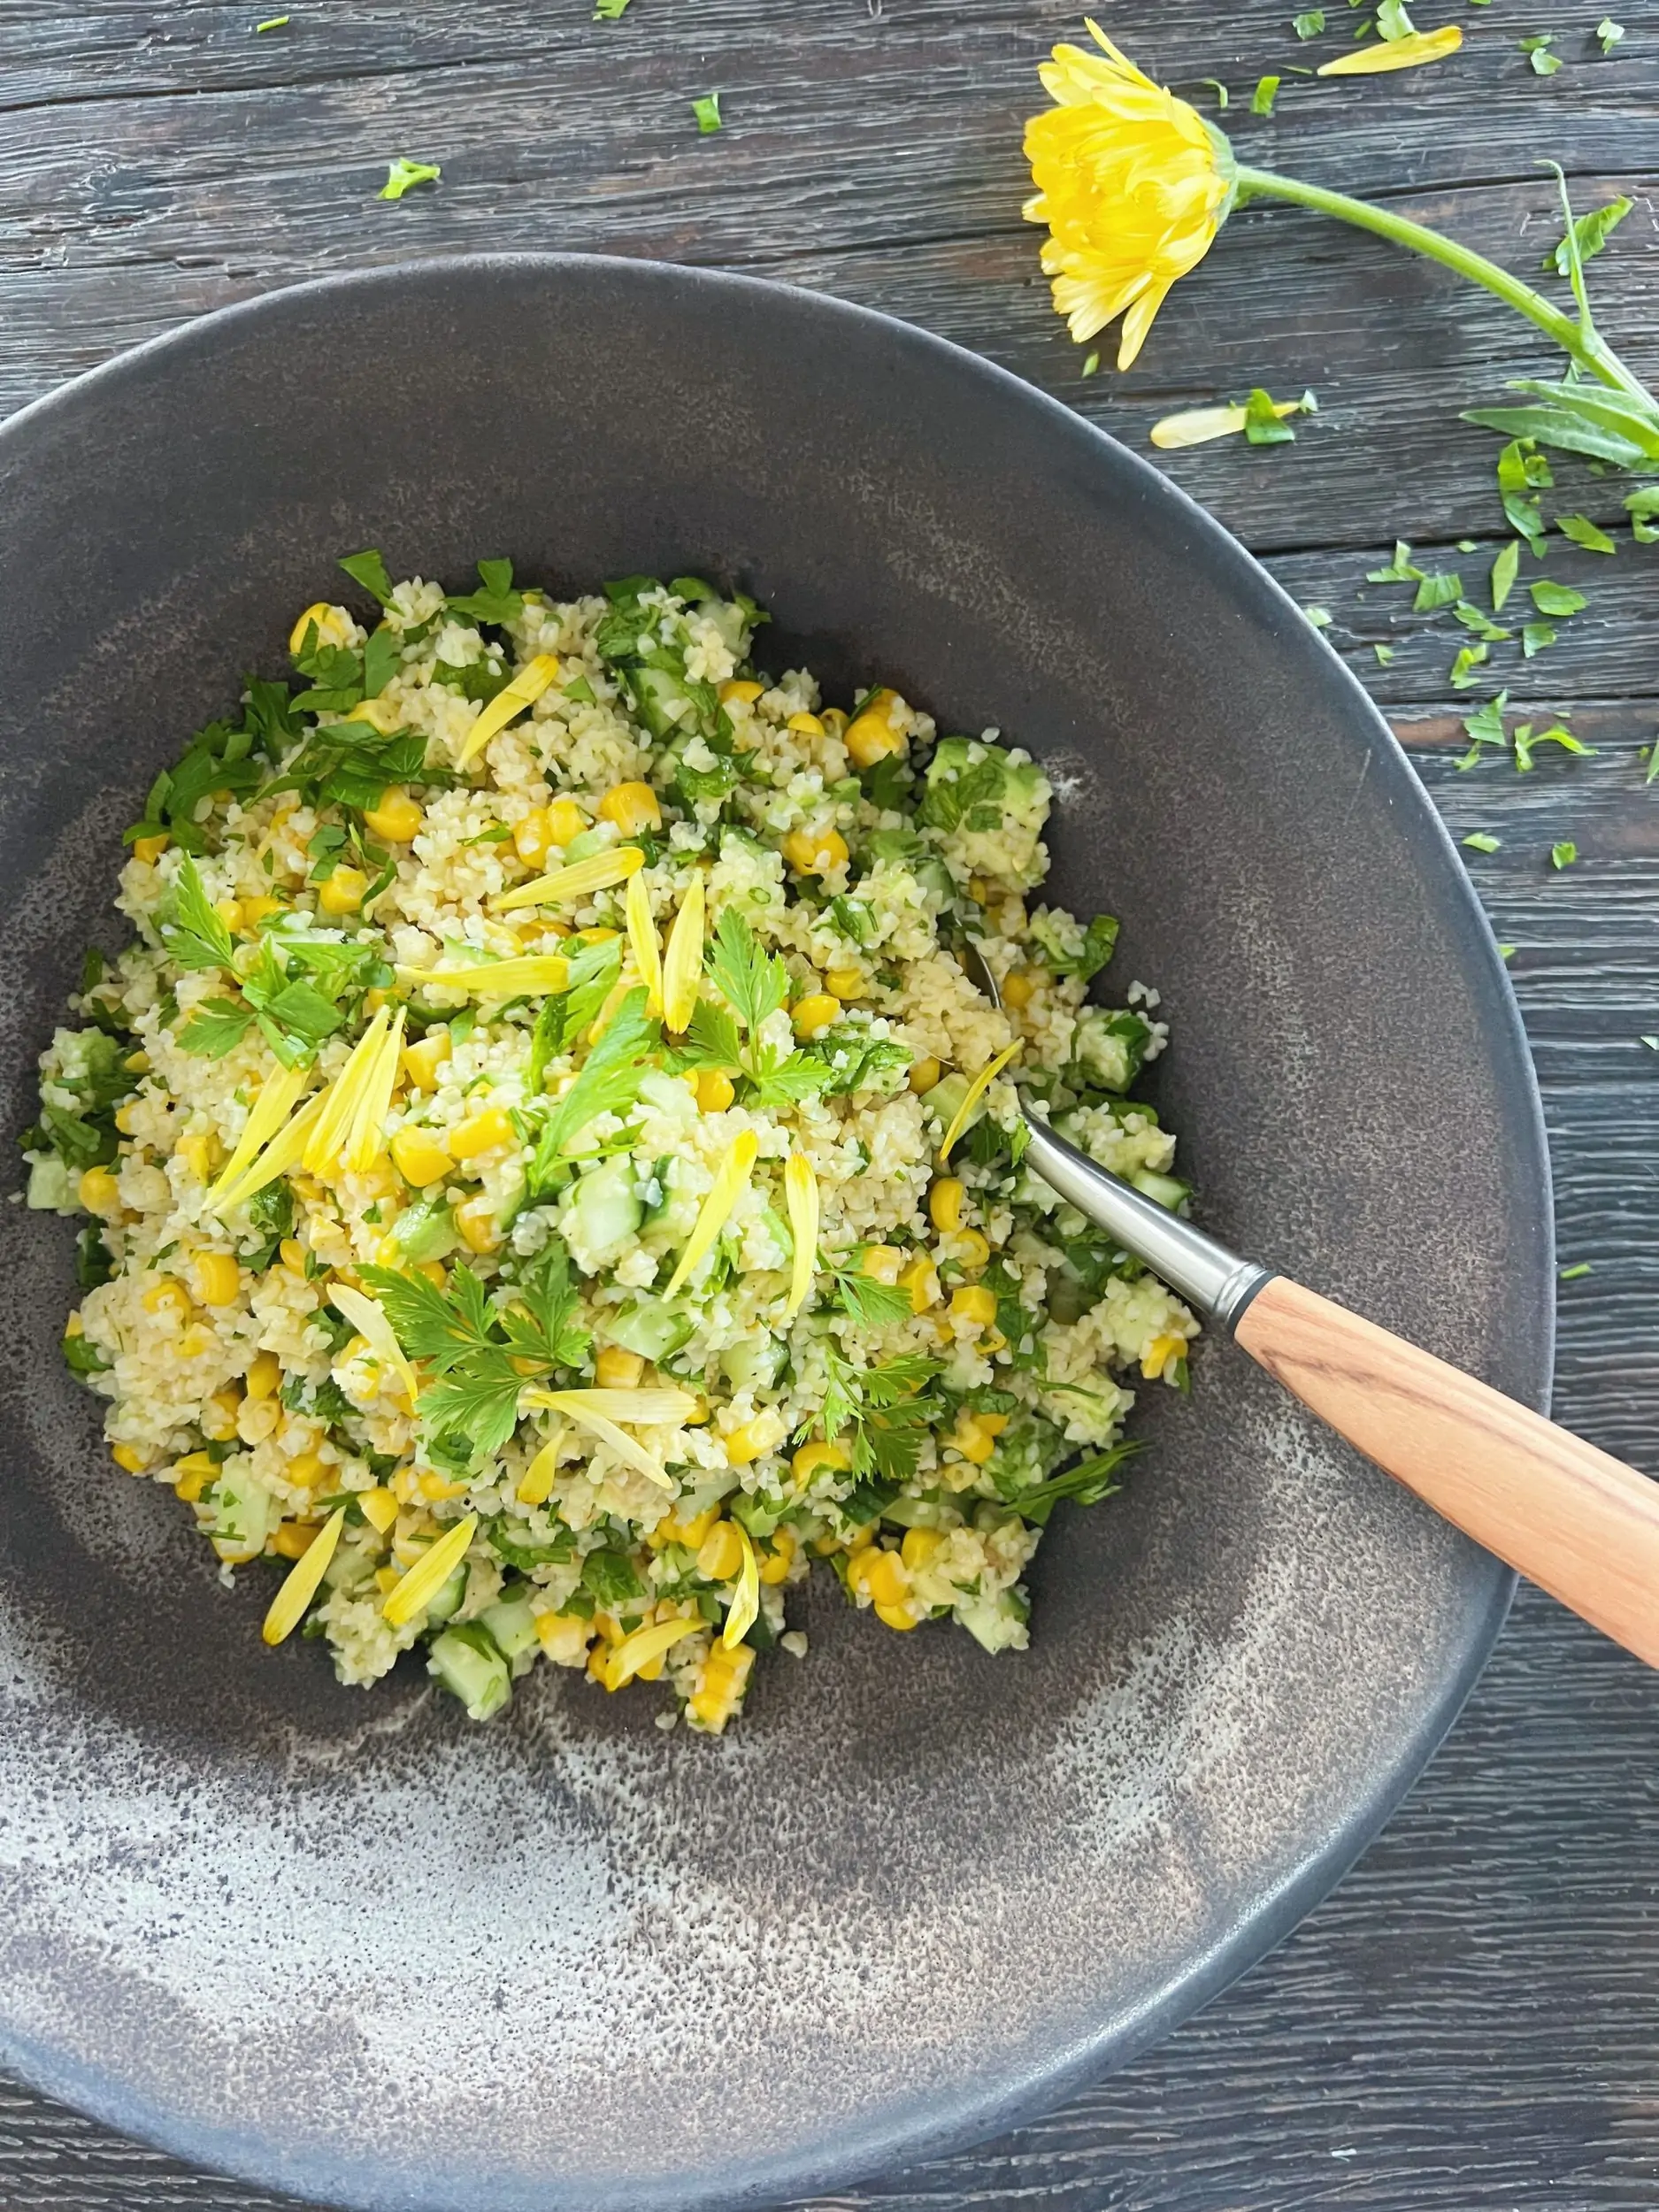 bulgursalat med majs i gråbrun keramik salatskål med en ske i med oliventræskaft. Pynter med gule blomster.